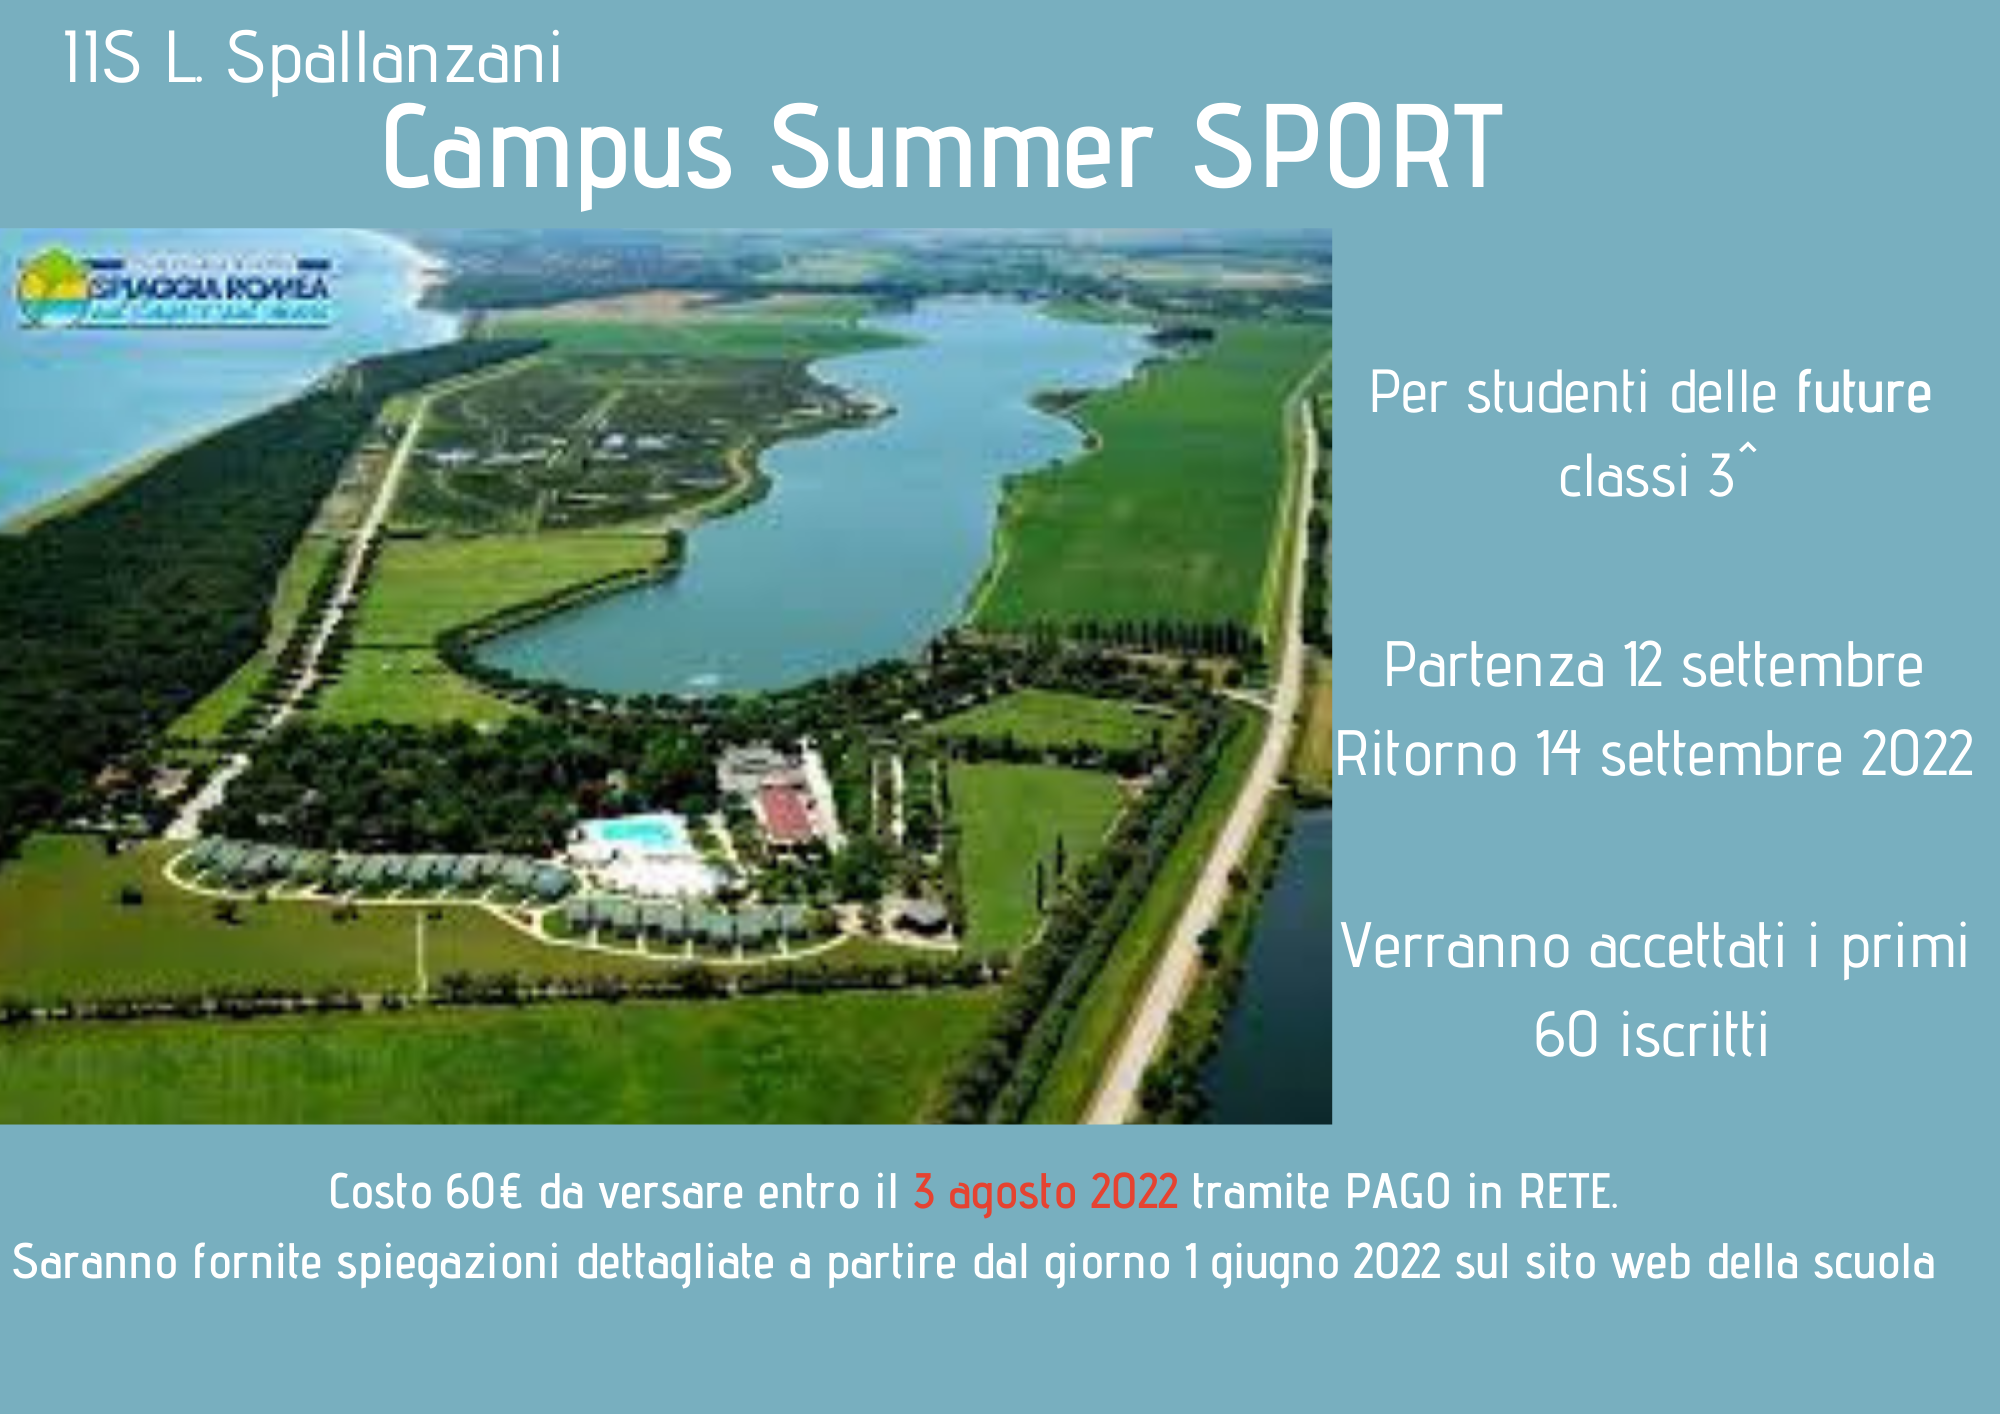 Istituto di Istruzione Superiore Lazzaro Spallanzani | Summer Camp